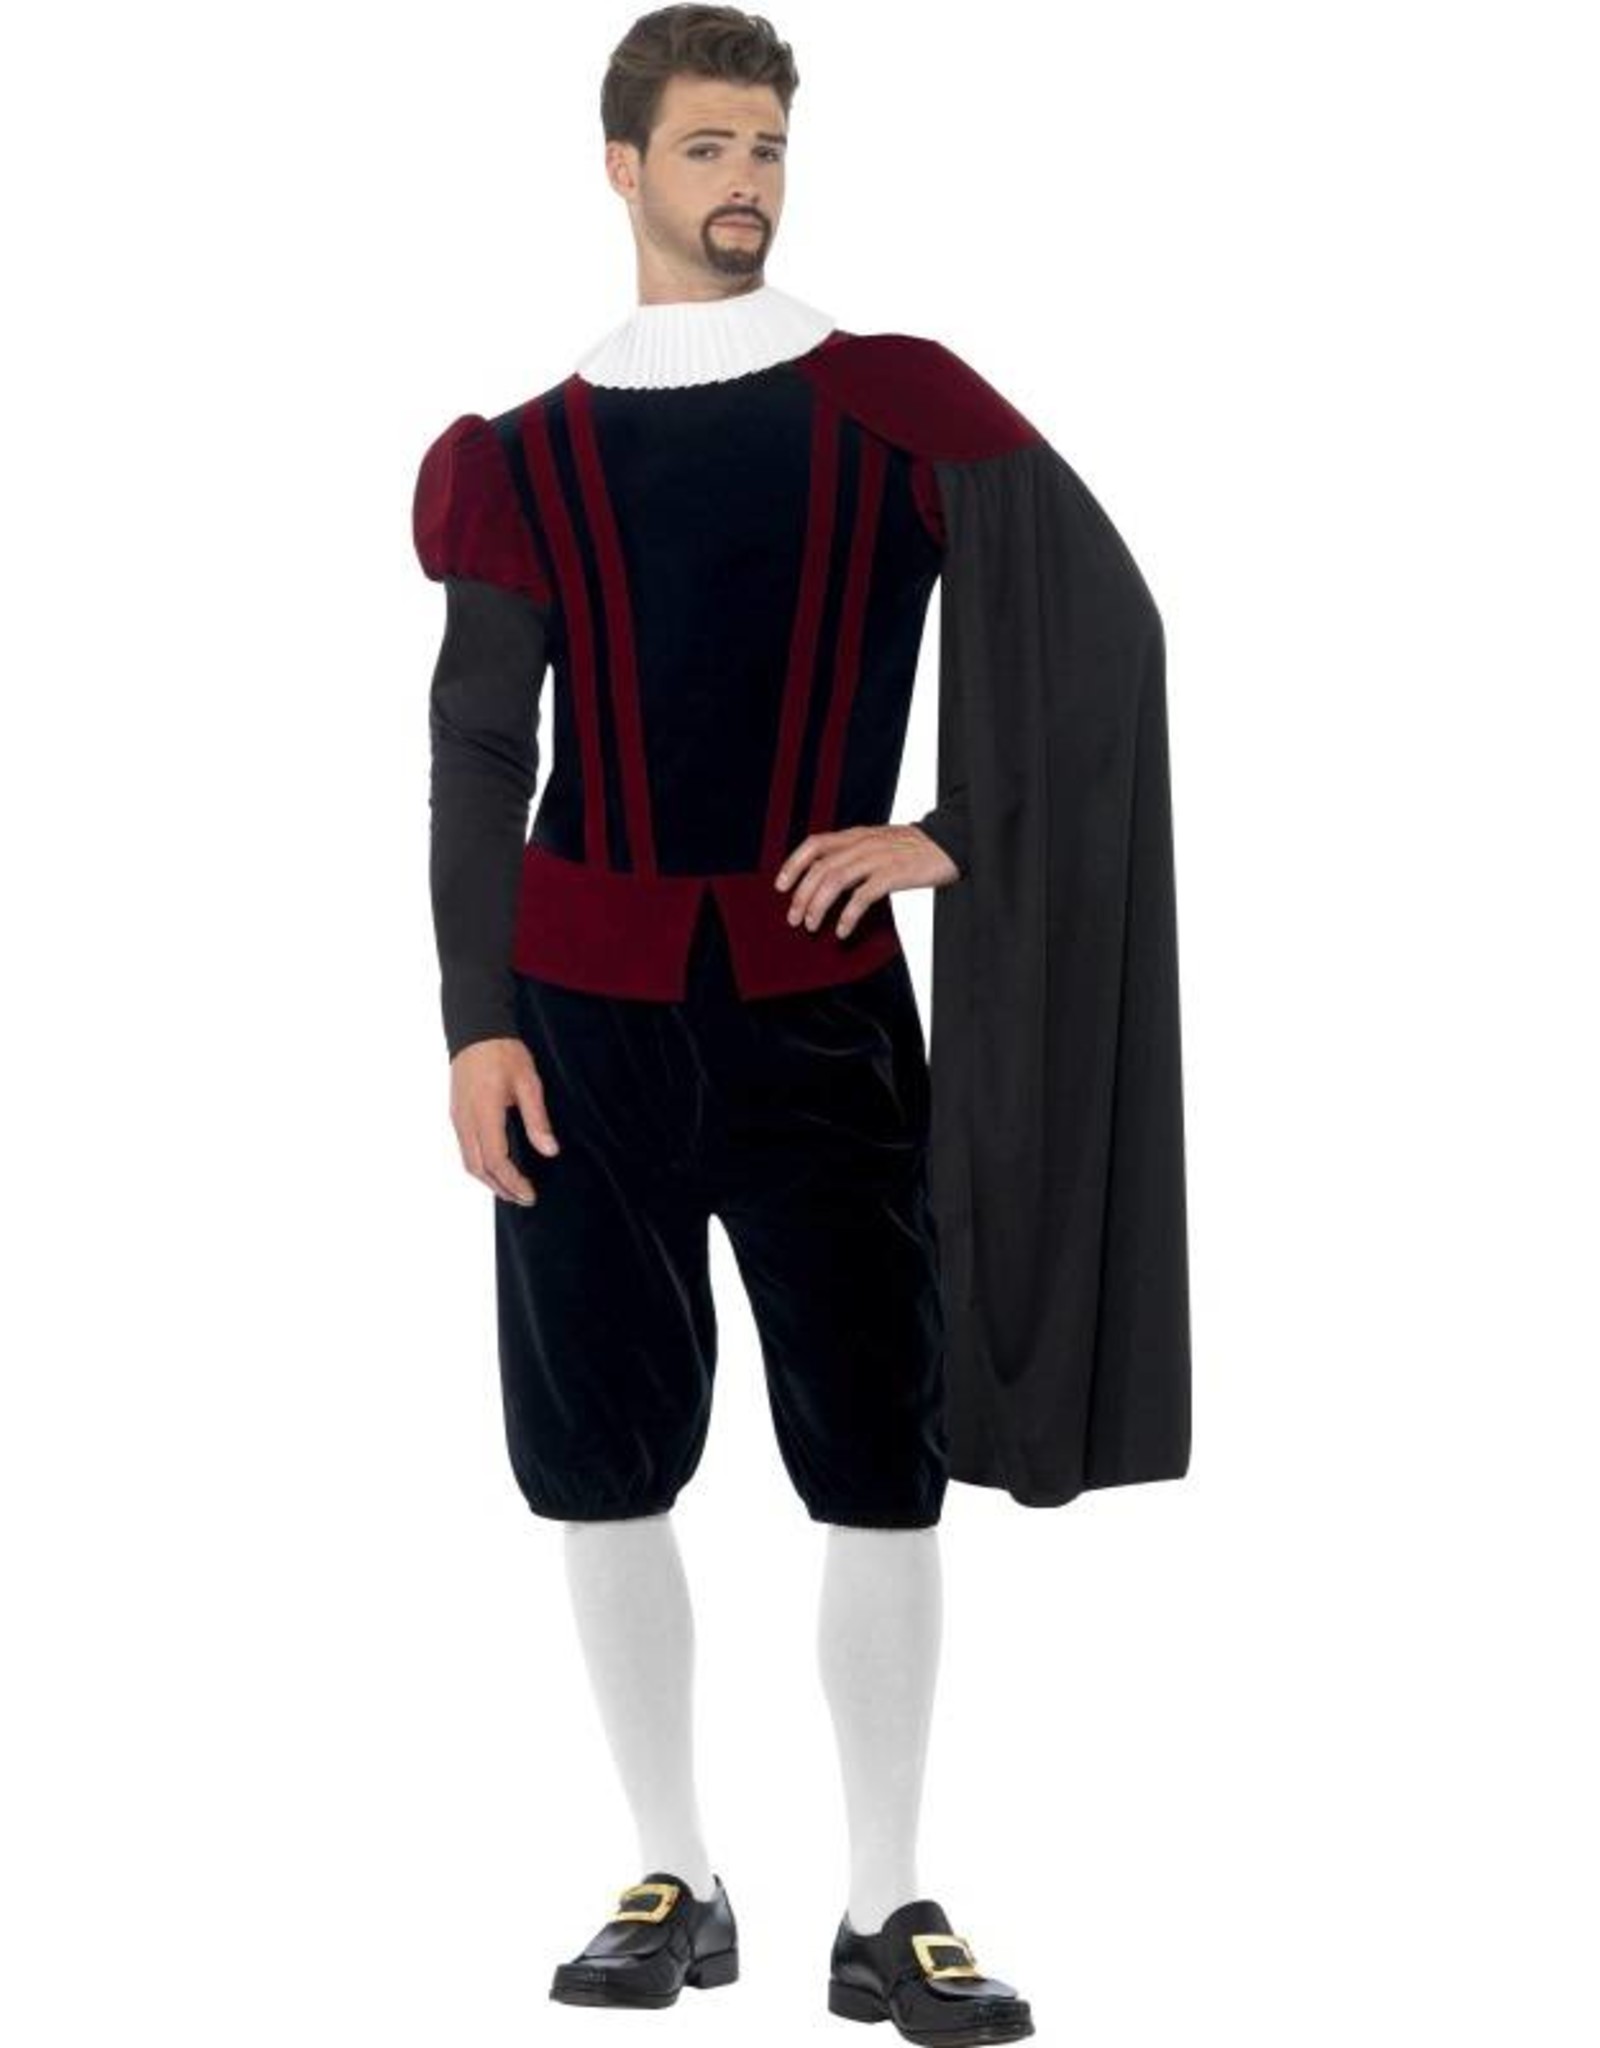 Tudor Heer Kostuum Deluxe